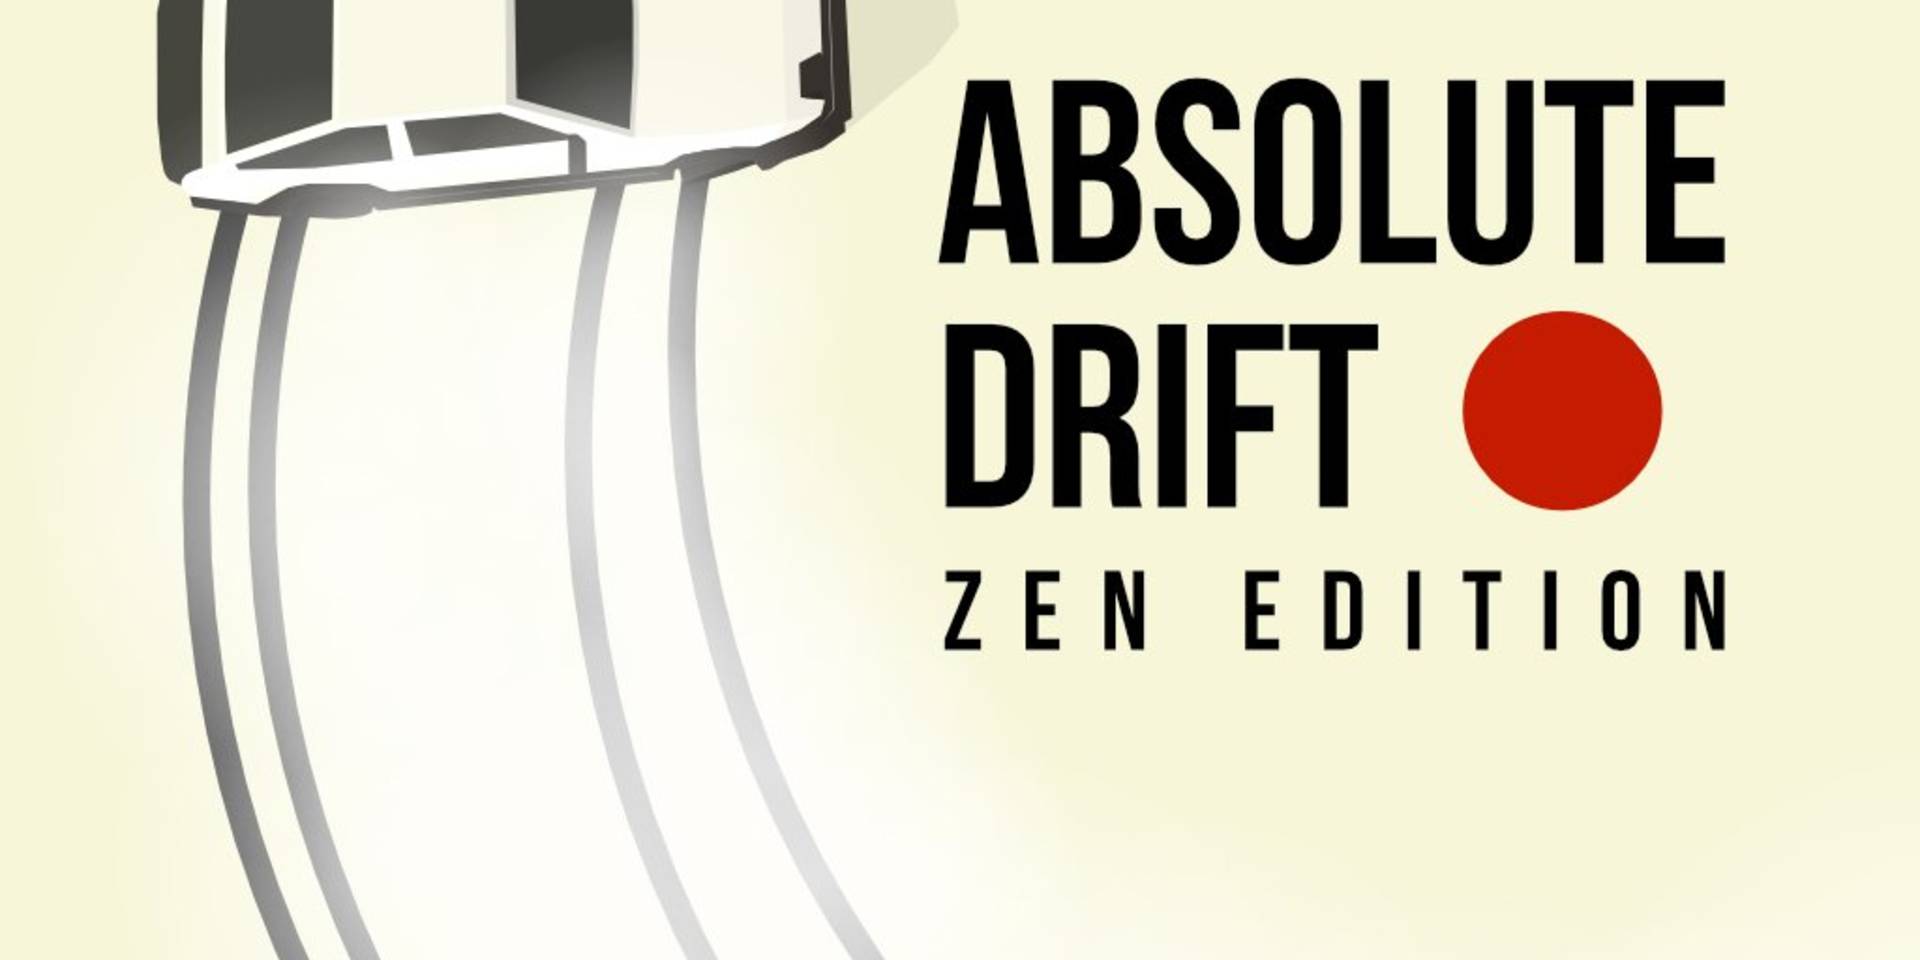 Absolute Drift: Zen Edition - PS4 Games